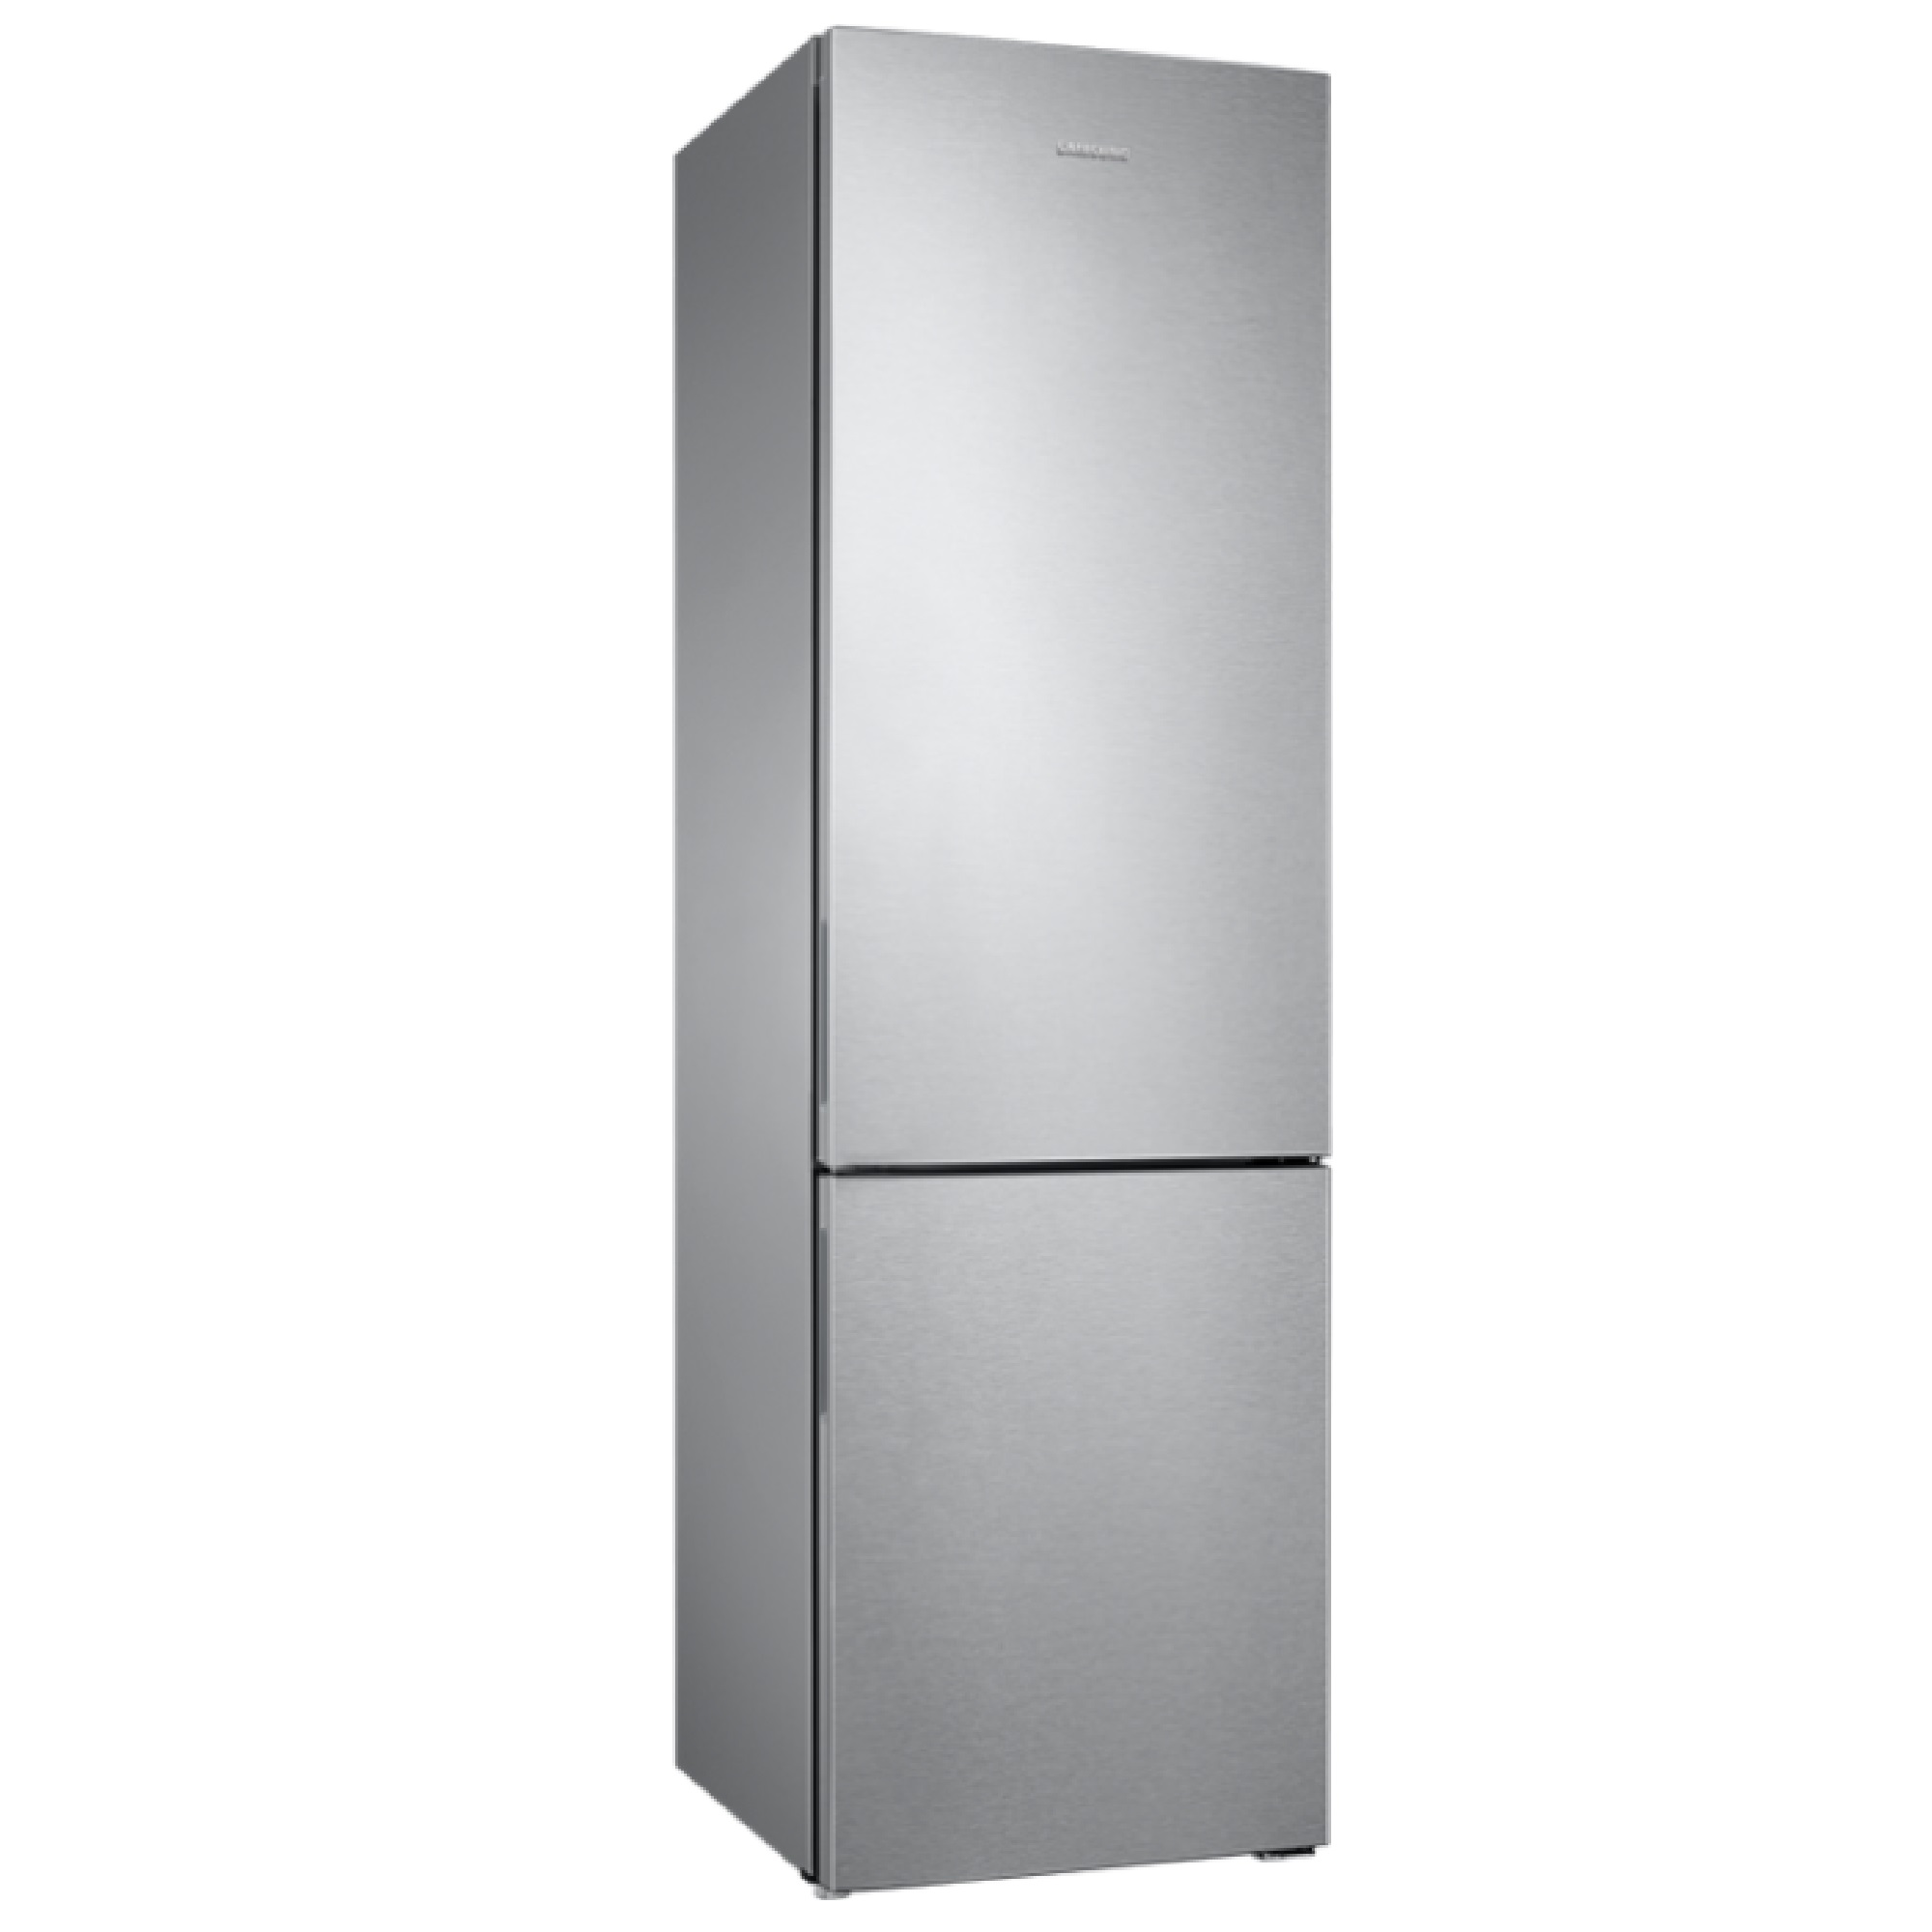 Купить холодильник в ярославле недорого. Холодильник самсунг rb34k6220ss. Холодильник Samsung rb37a5200sa серебристый. Холодильник Samsung RB-34 k6220s4. Холодильник Samsung rb37p5300sa/w3.